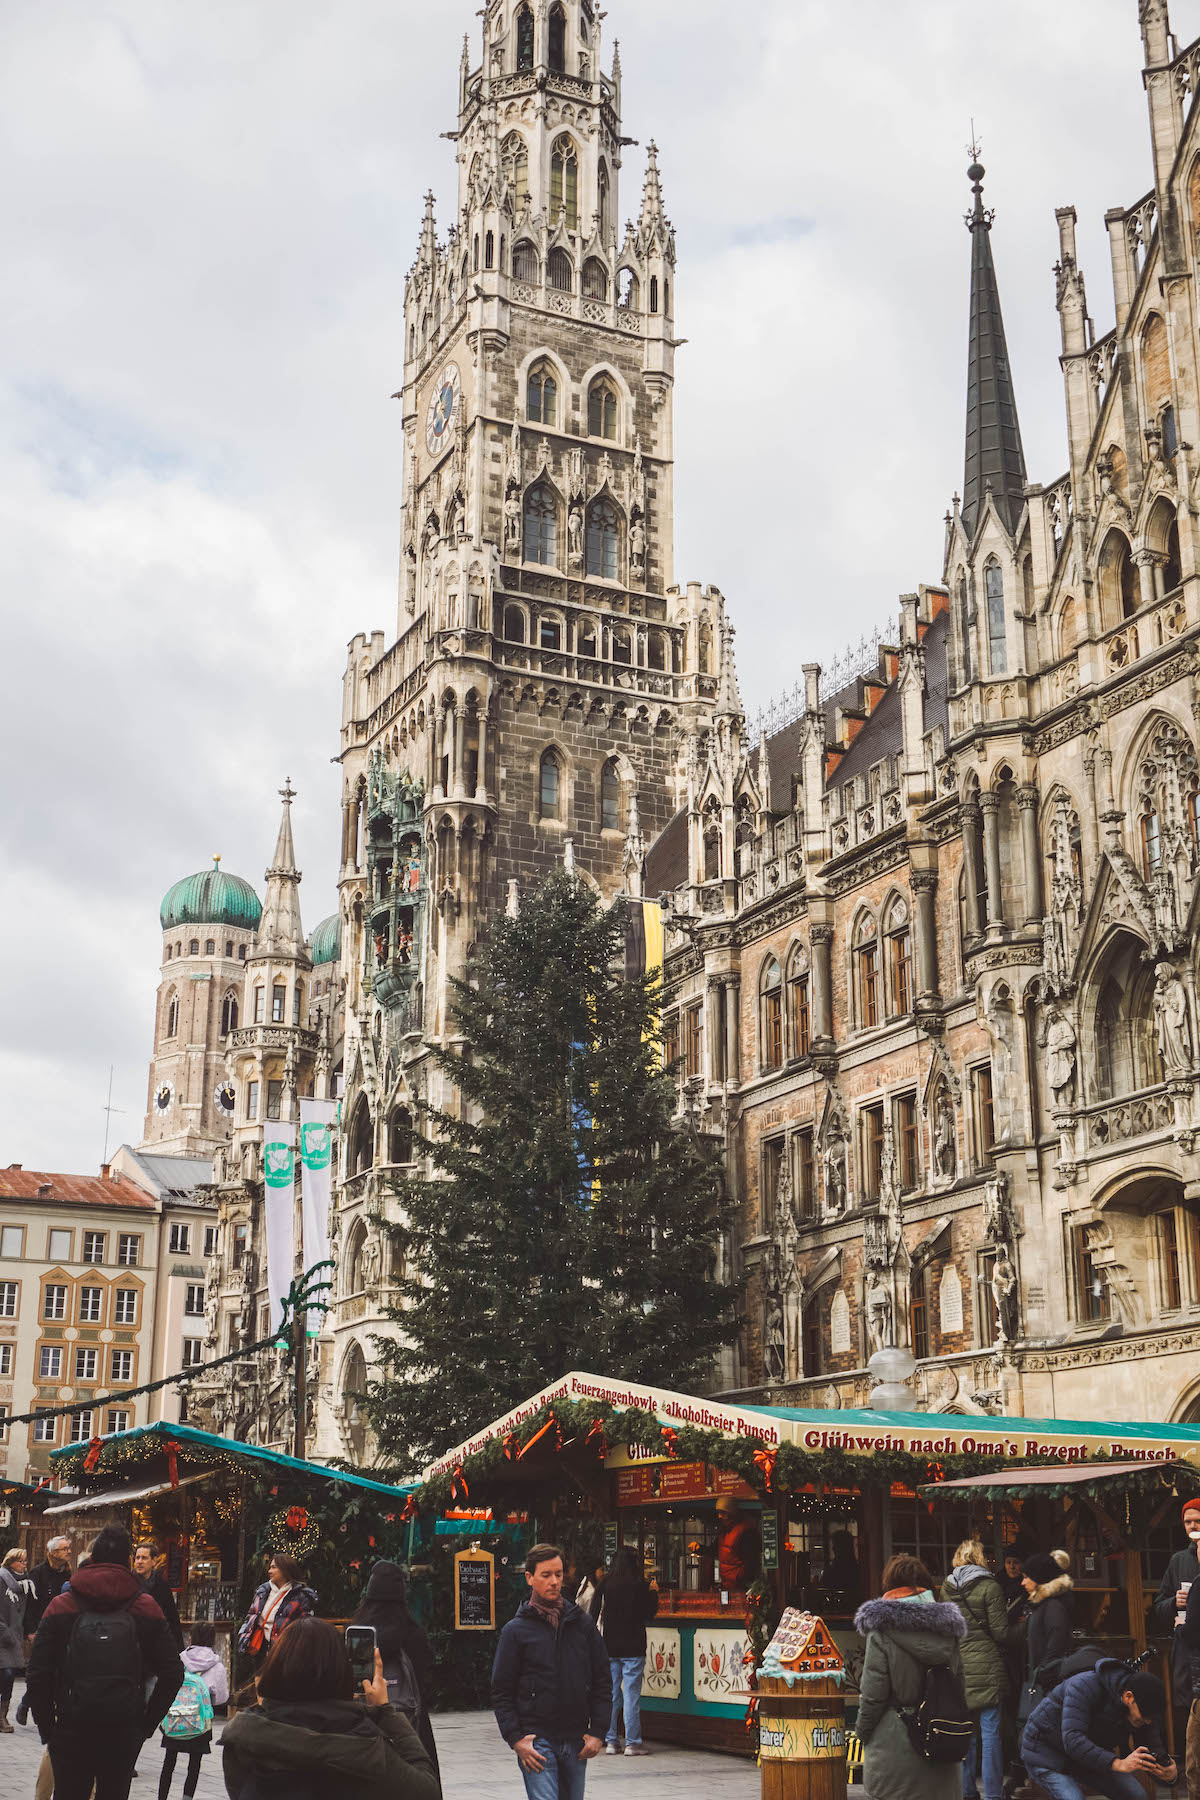 The Christmas Market in Munich on Marienplatz